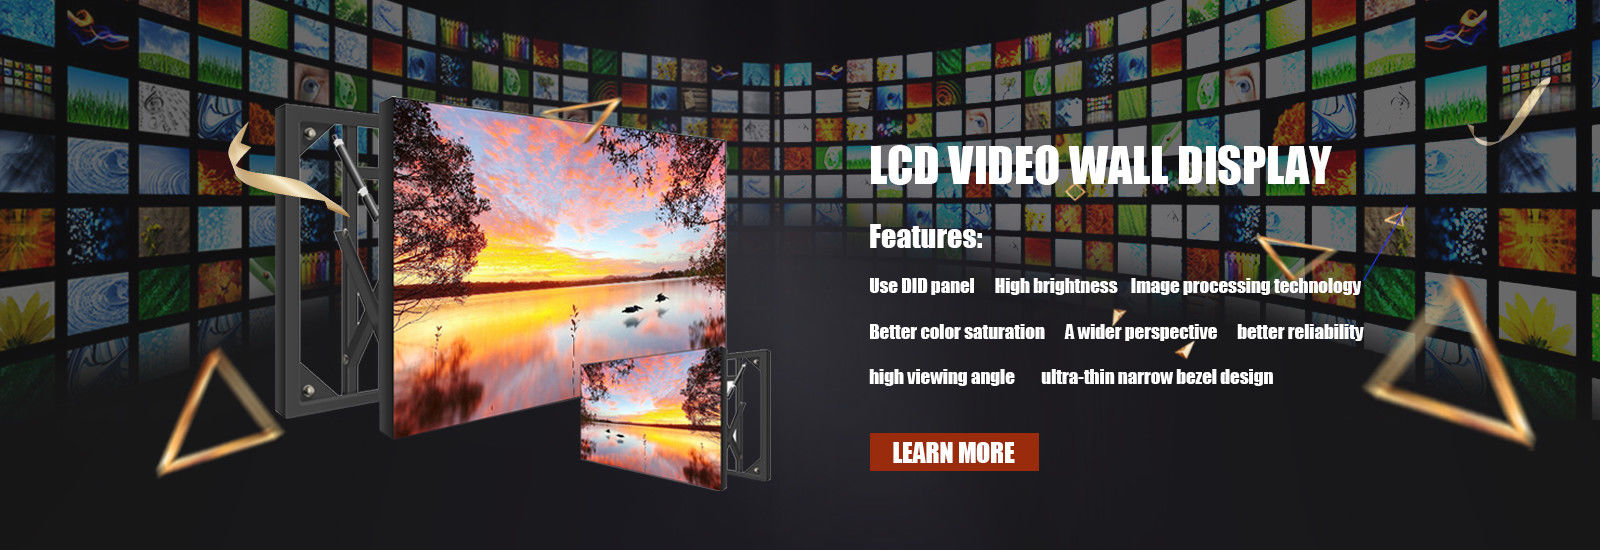 จอ LCD Video Wall